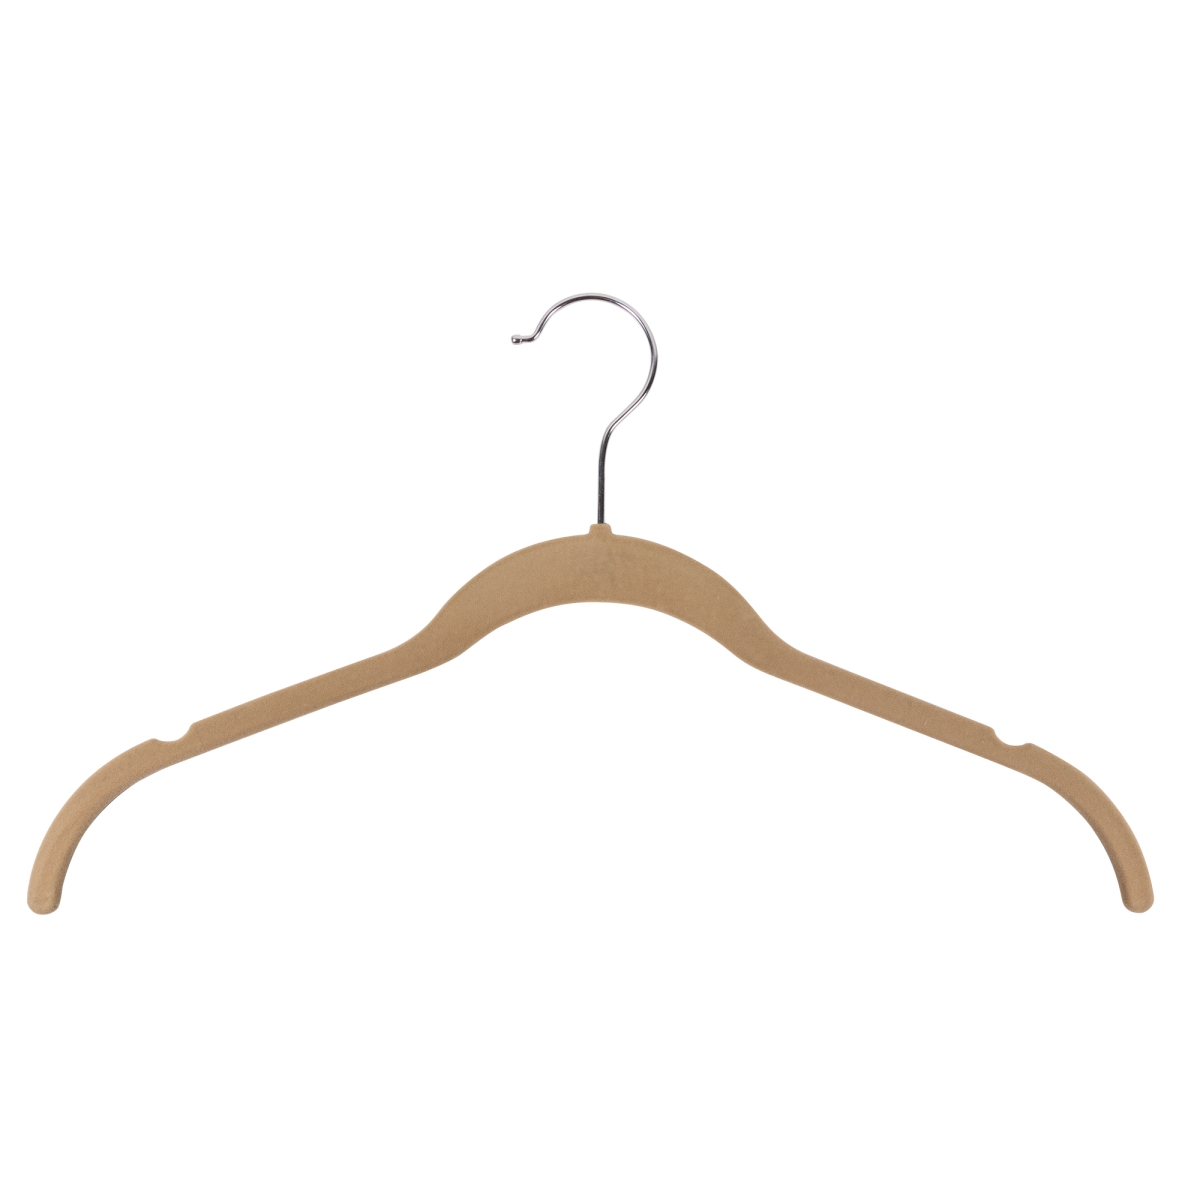 Shirt & Blouse Hanger With Notches Camel - Flocked Velvet Pack Of 50